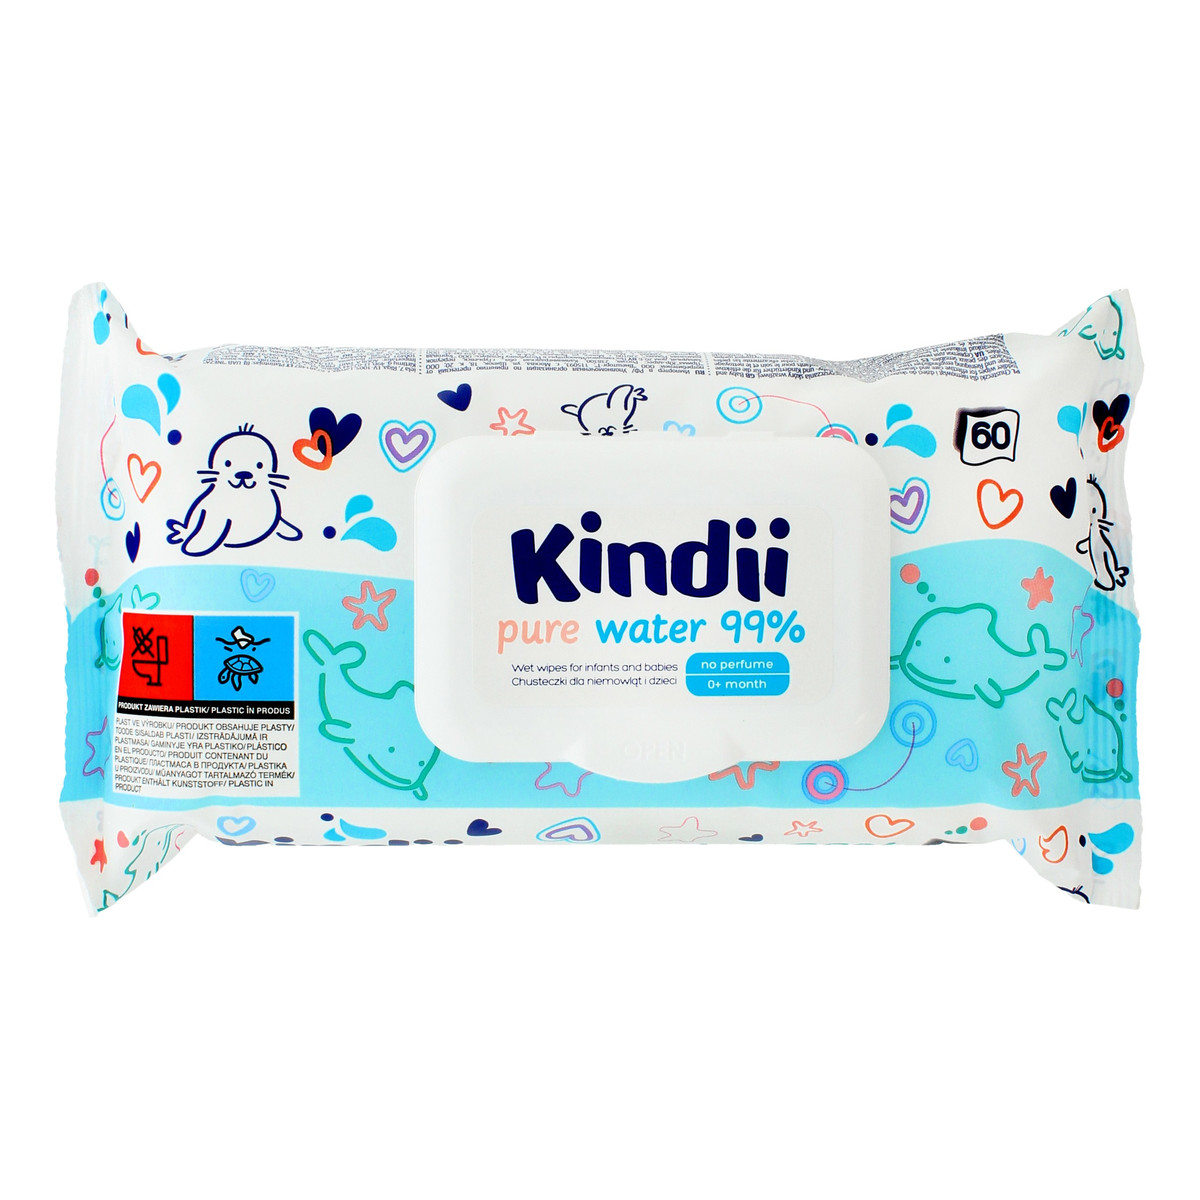 Kindii Pure Water 99% Chusteczki oczyszczające dla niemowląt i dzieci 60 szt.